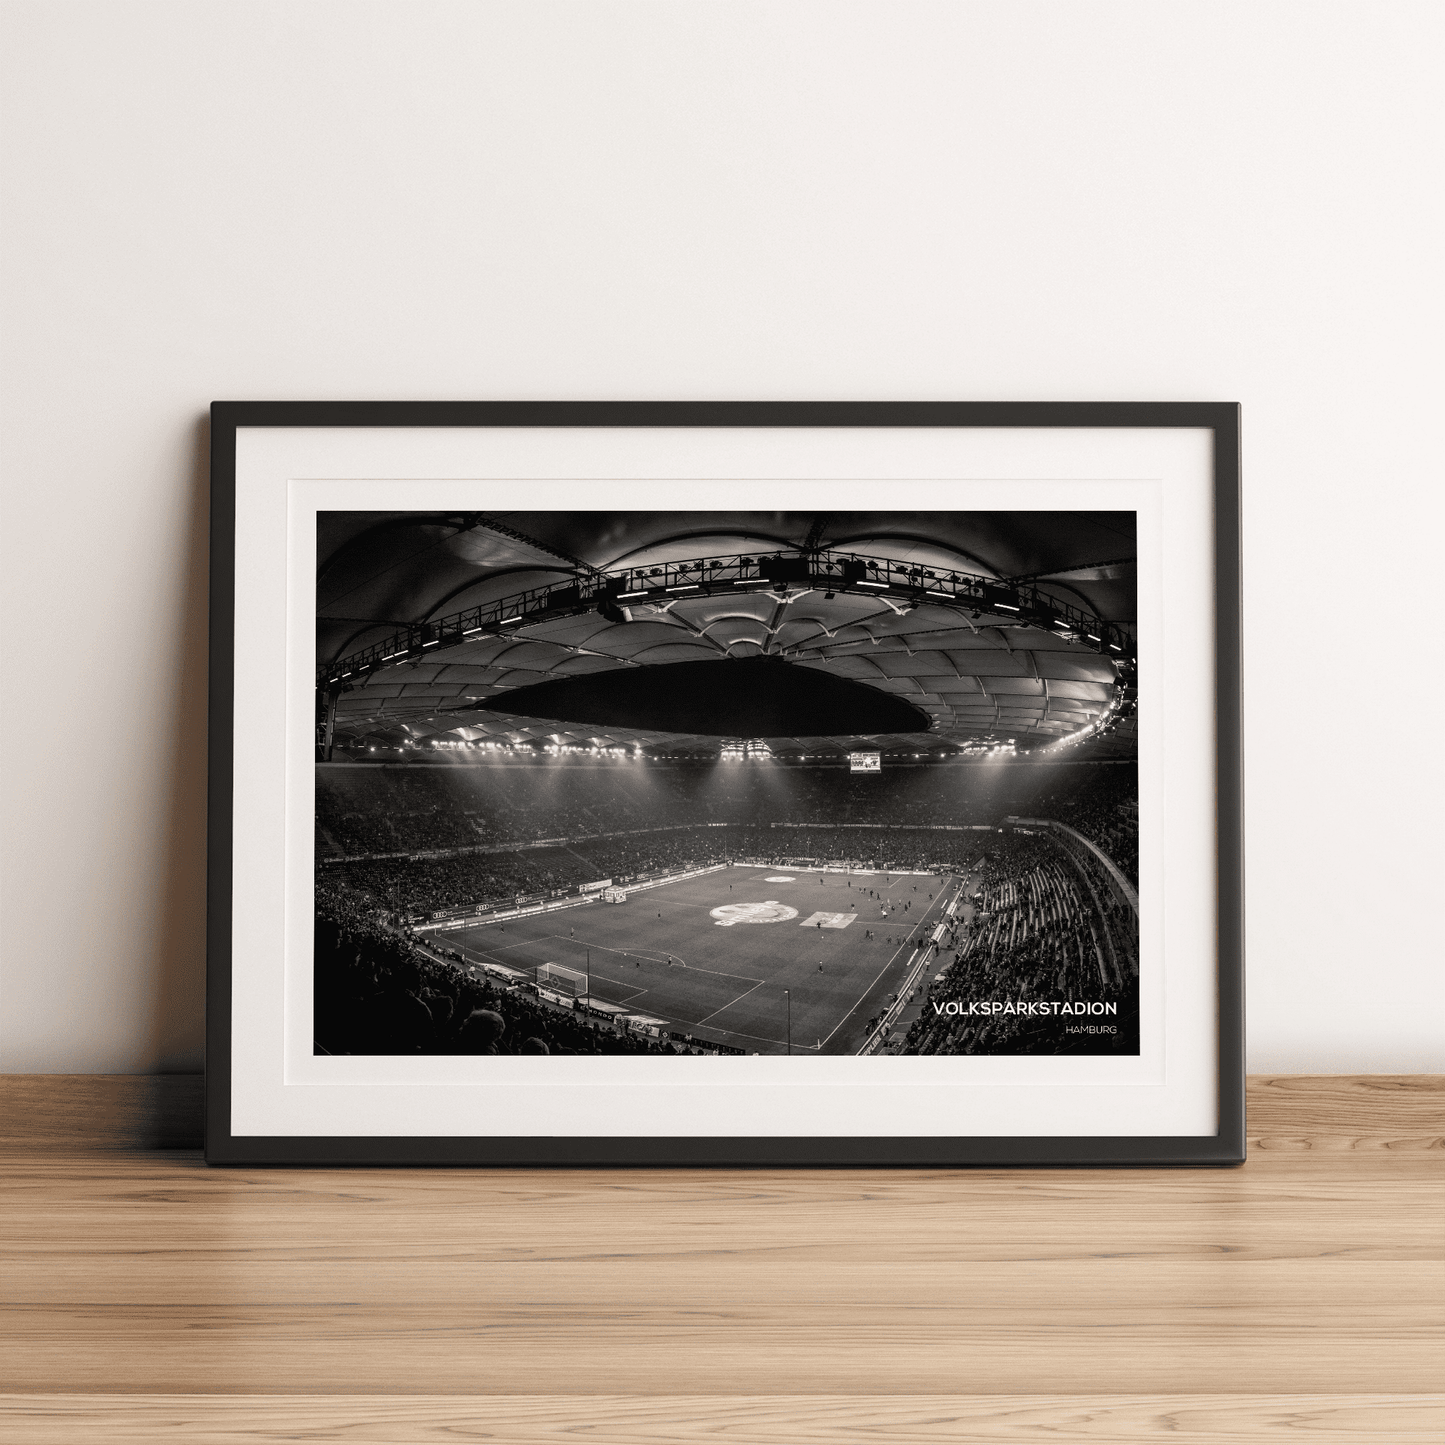 Impresión fotográfica del estadio Volksparkstadion Hamburger SV